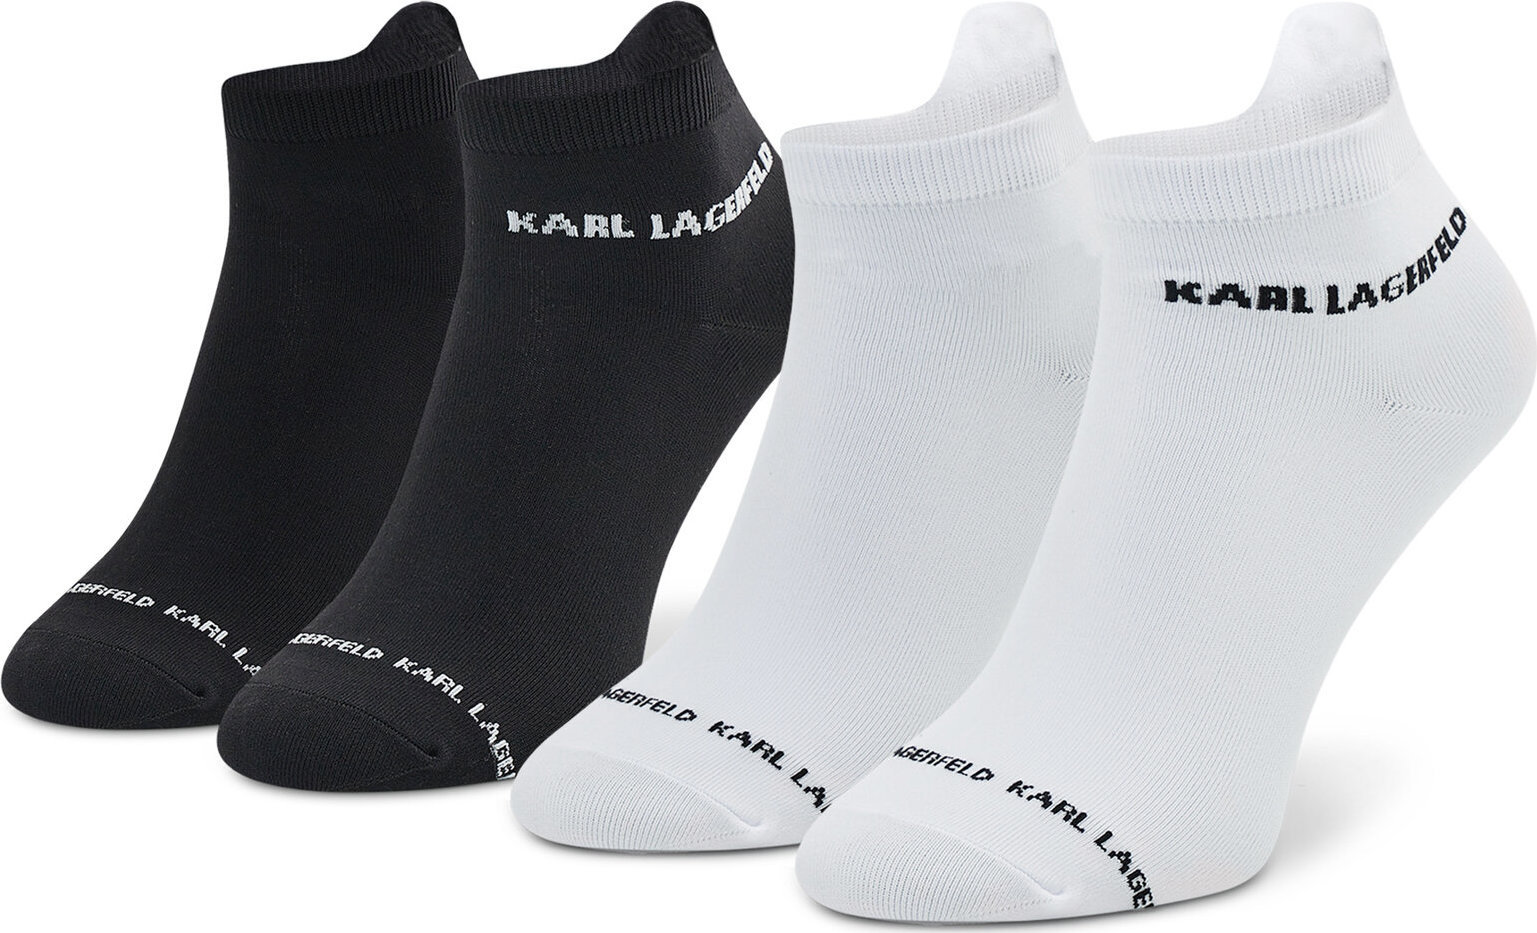 Súprava 2 párov kotníkových ponožiek dámskych KARL LAGERFELD 220W6001 Blck/Wht A998